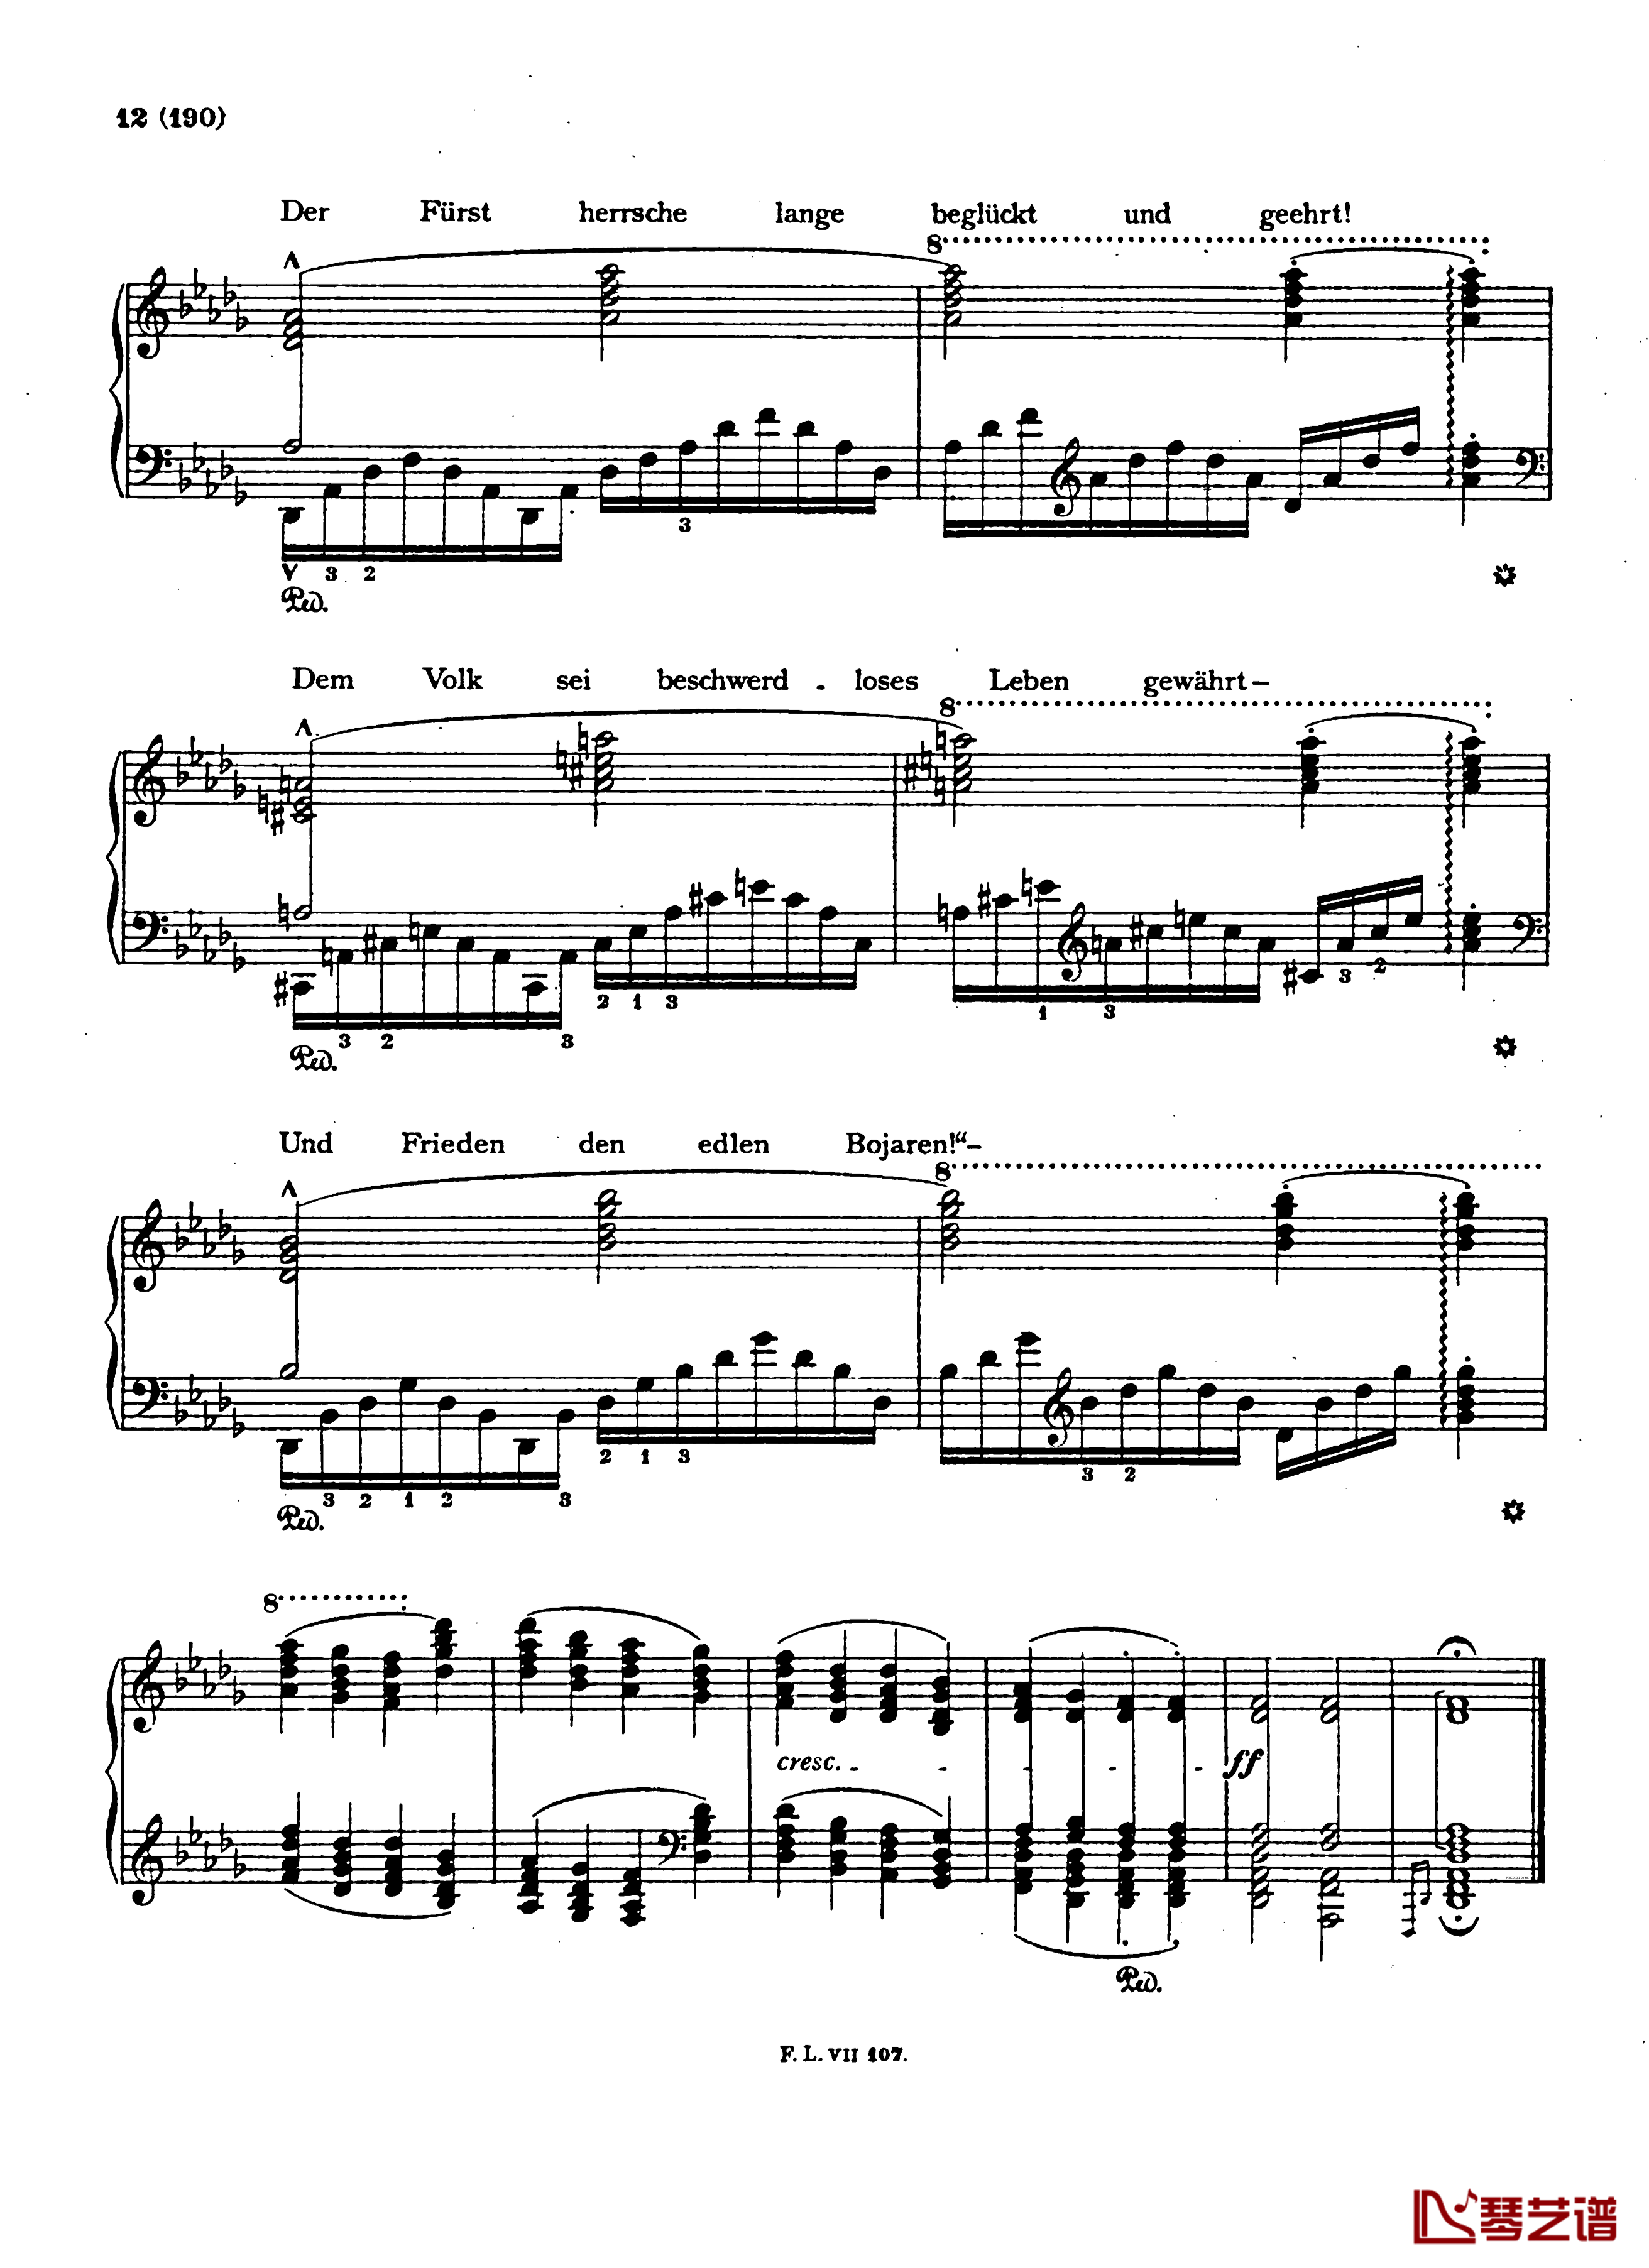  盲人歌手S.350钢琴谱-配乐诗朗诵-李斯特12